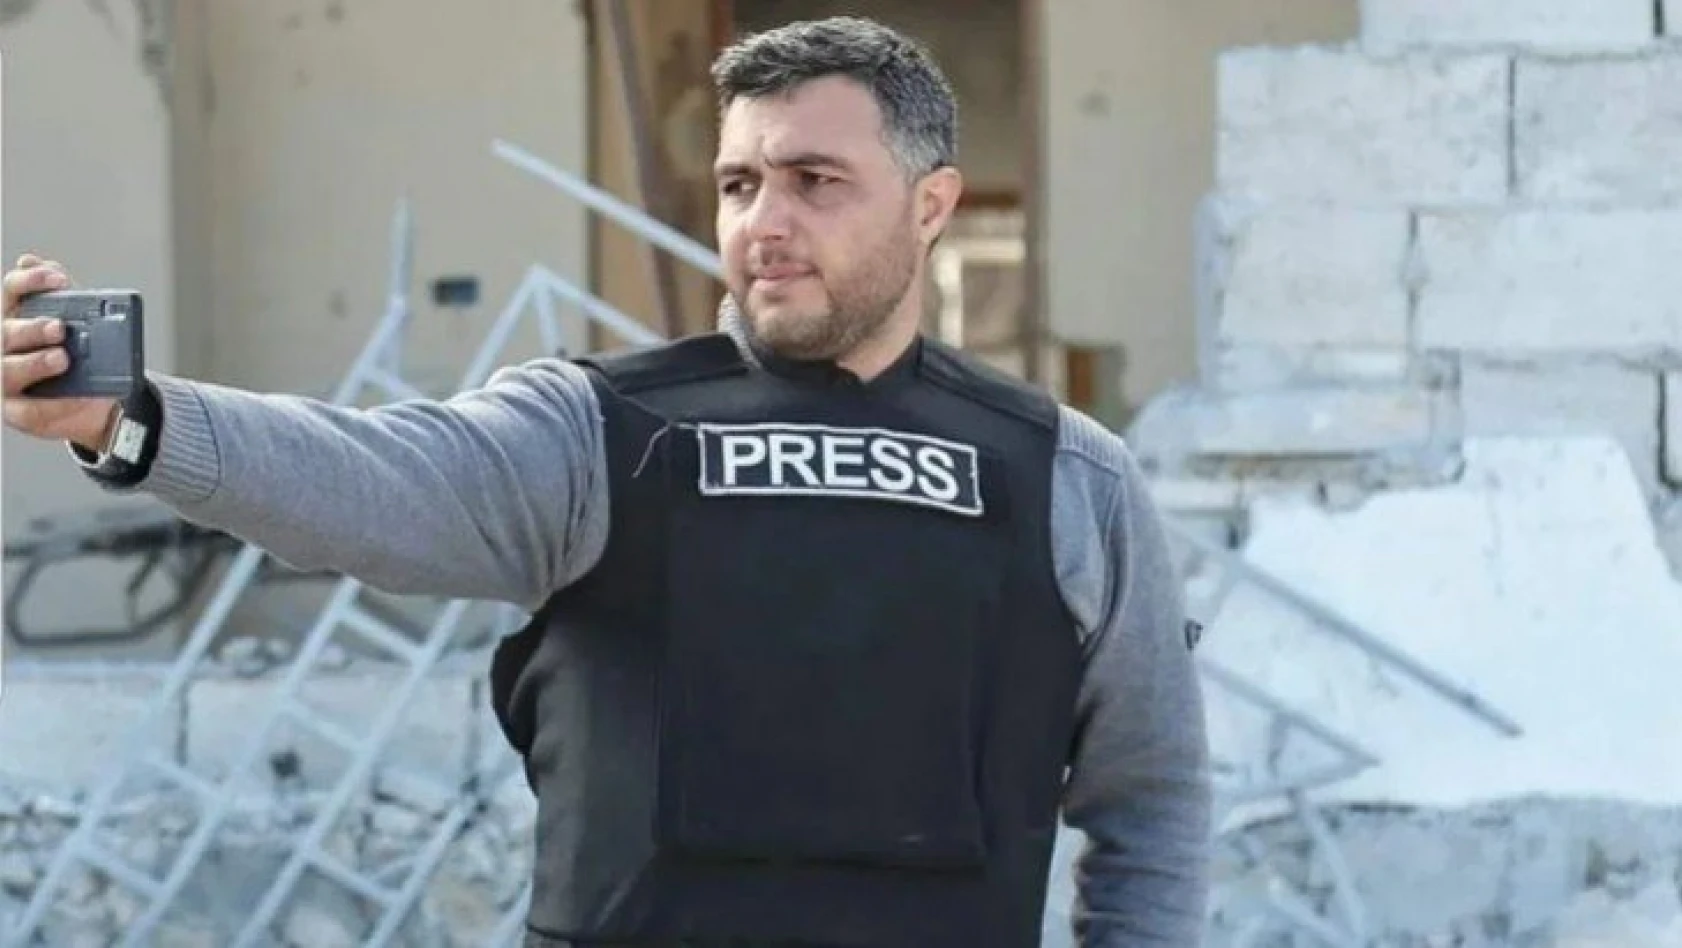 TRT muhabiri Hüseyin Hattab, suikast sonucu hayatını kaybetti